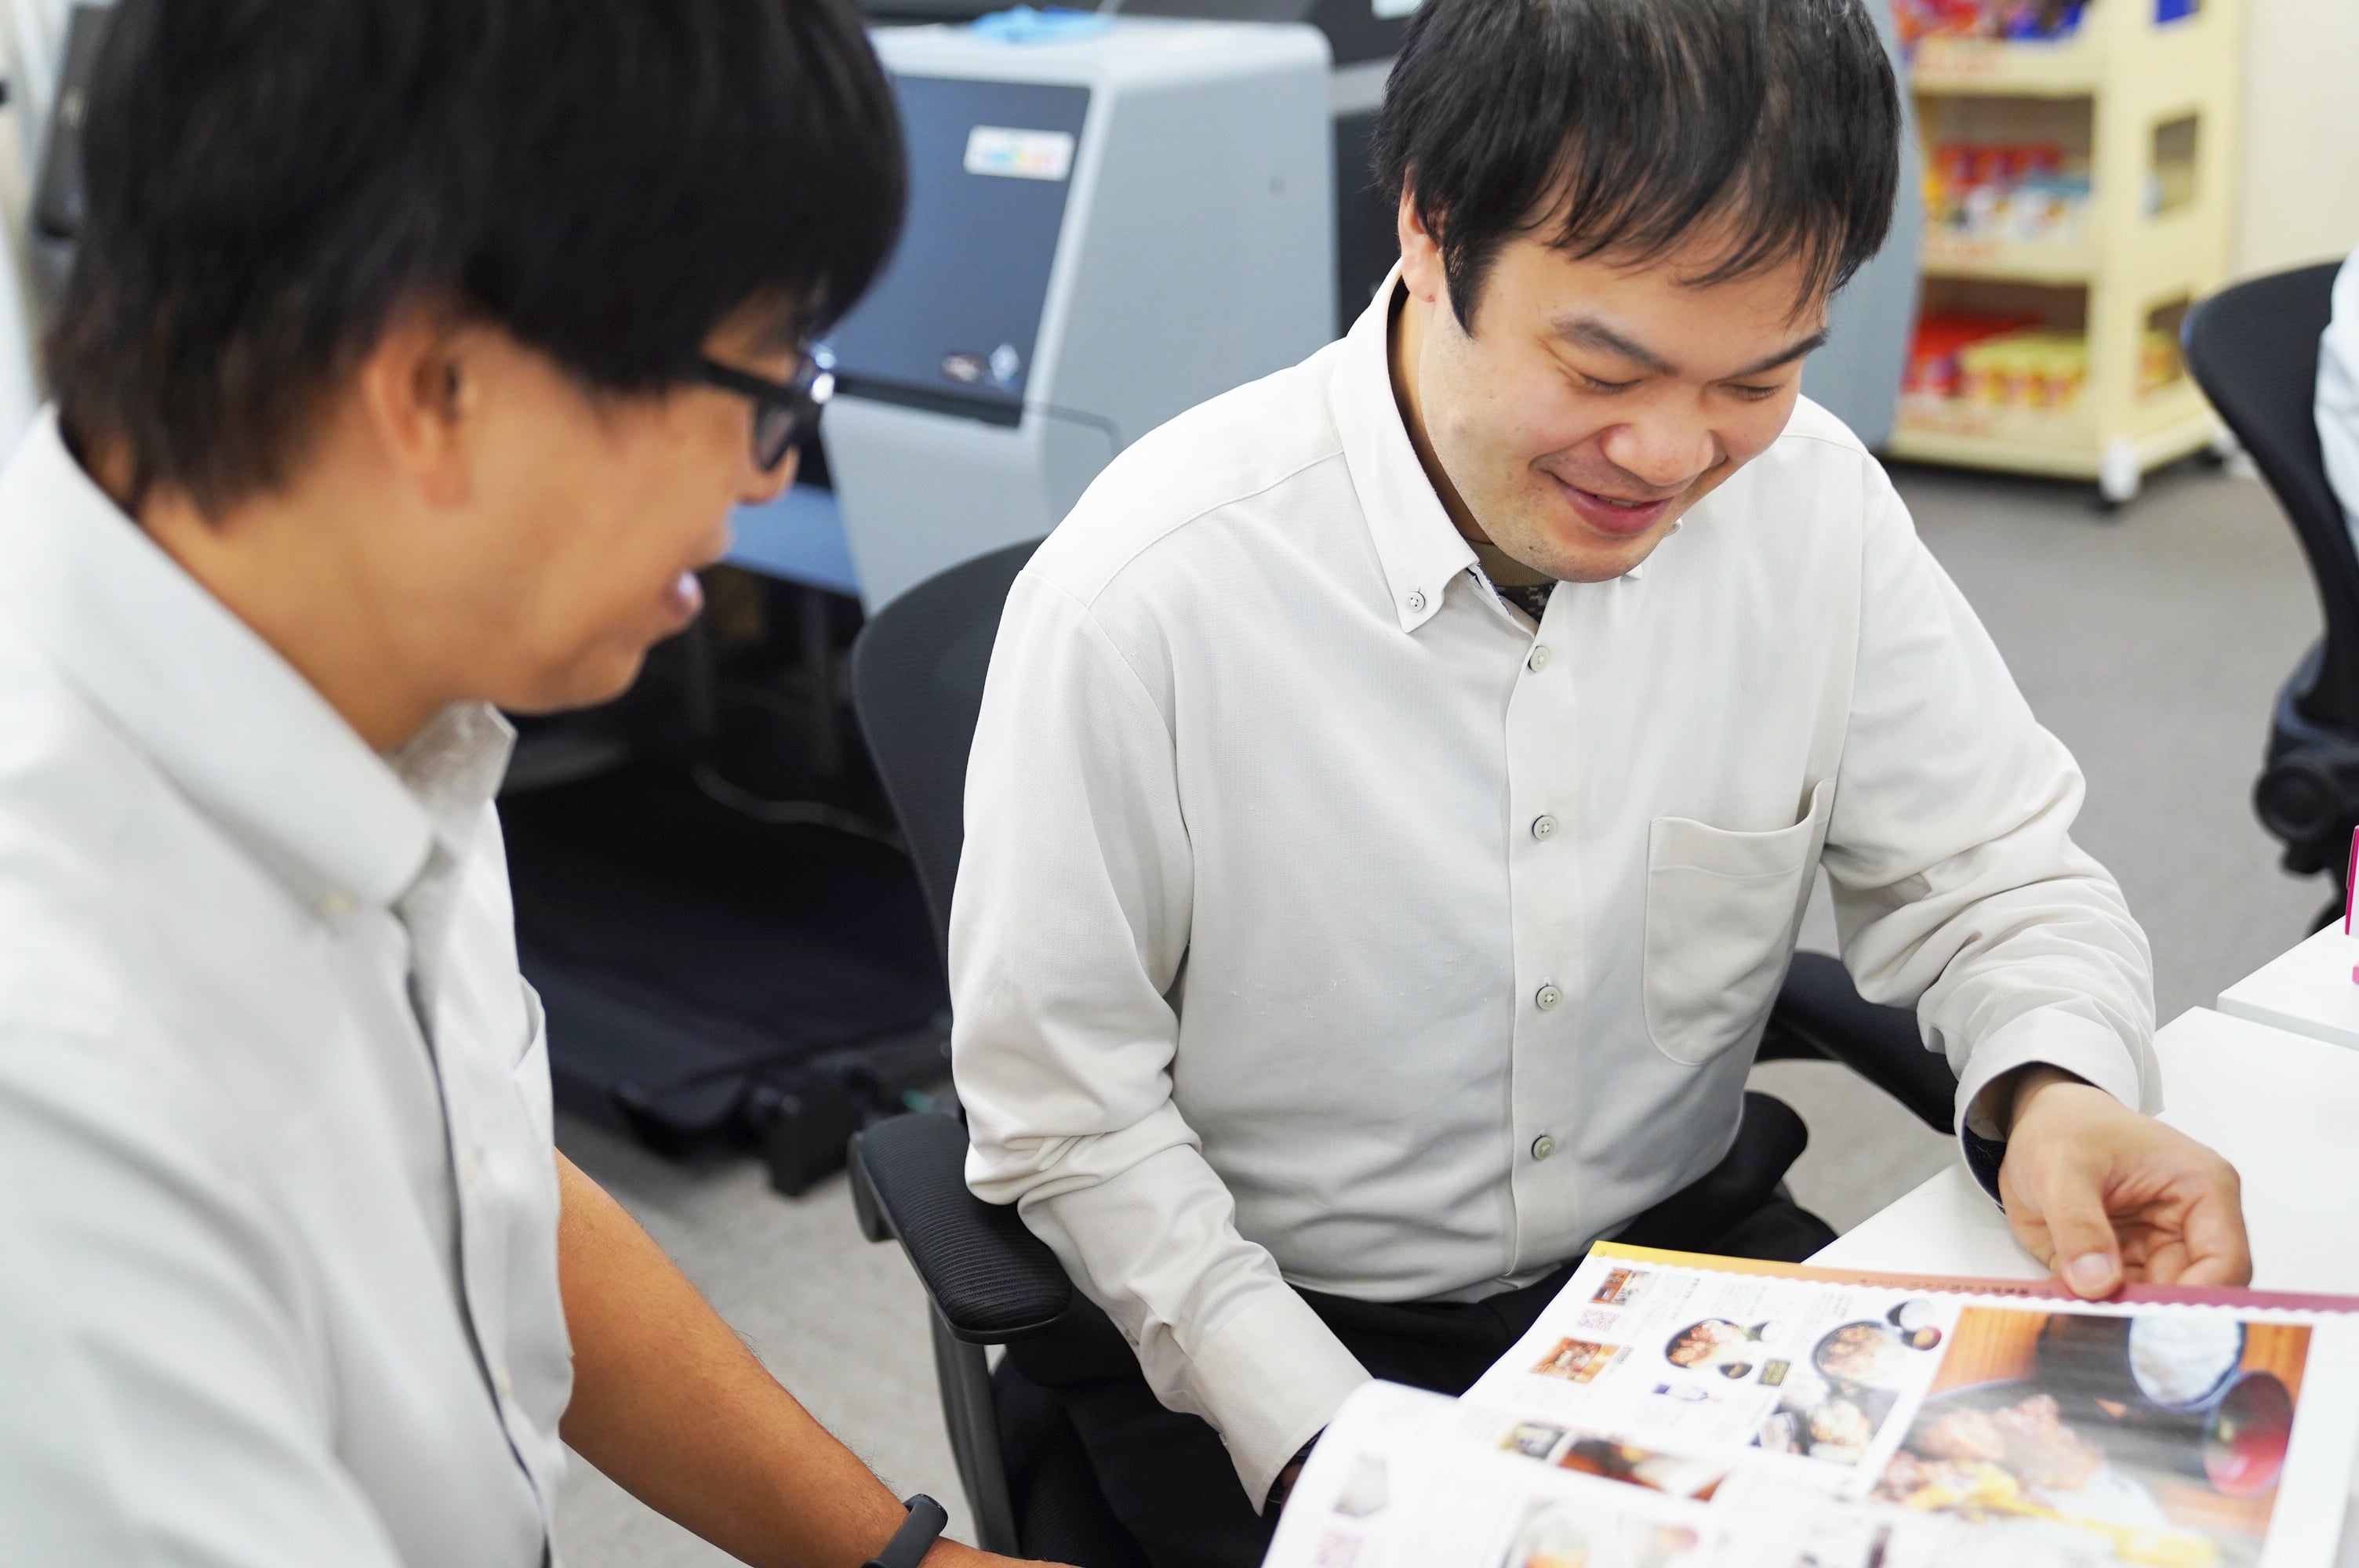 印刷された冊子を確認する高田さん(左)と渡部さん(右)。